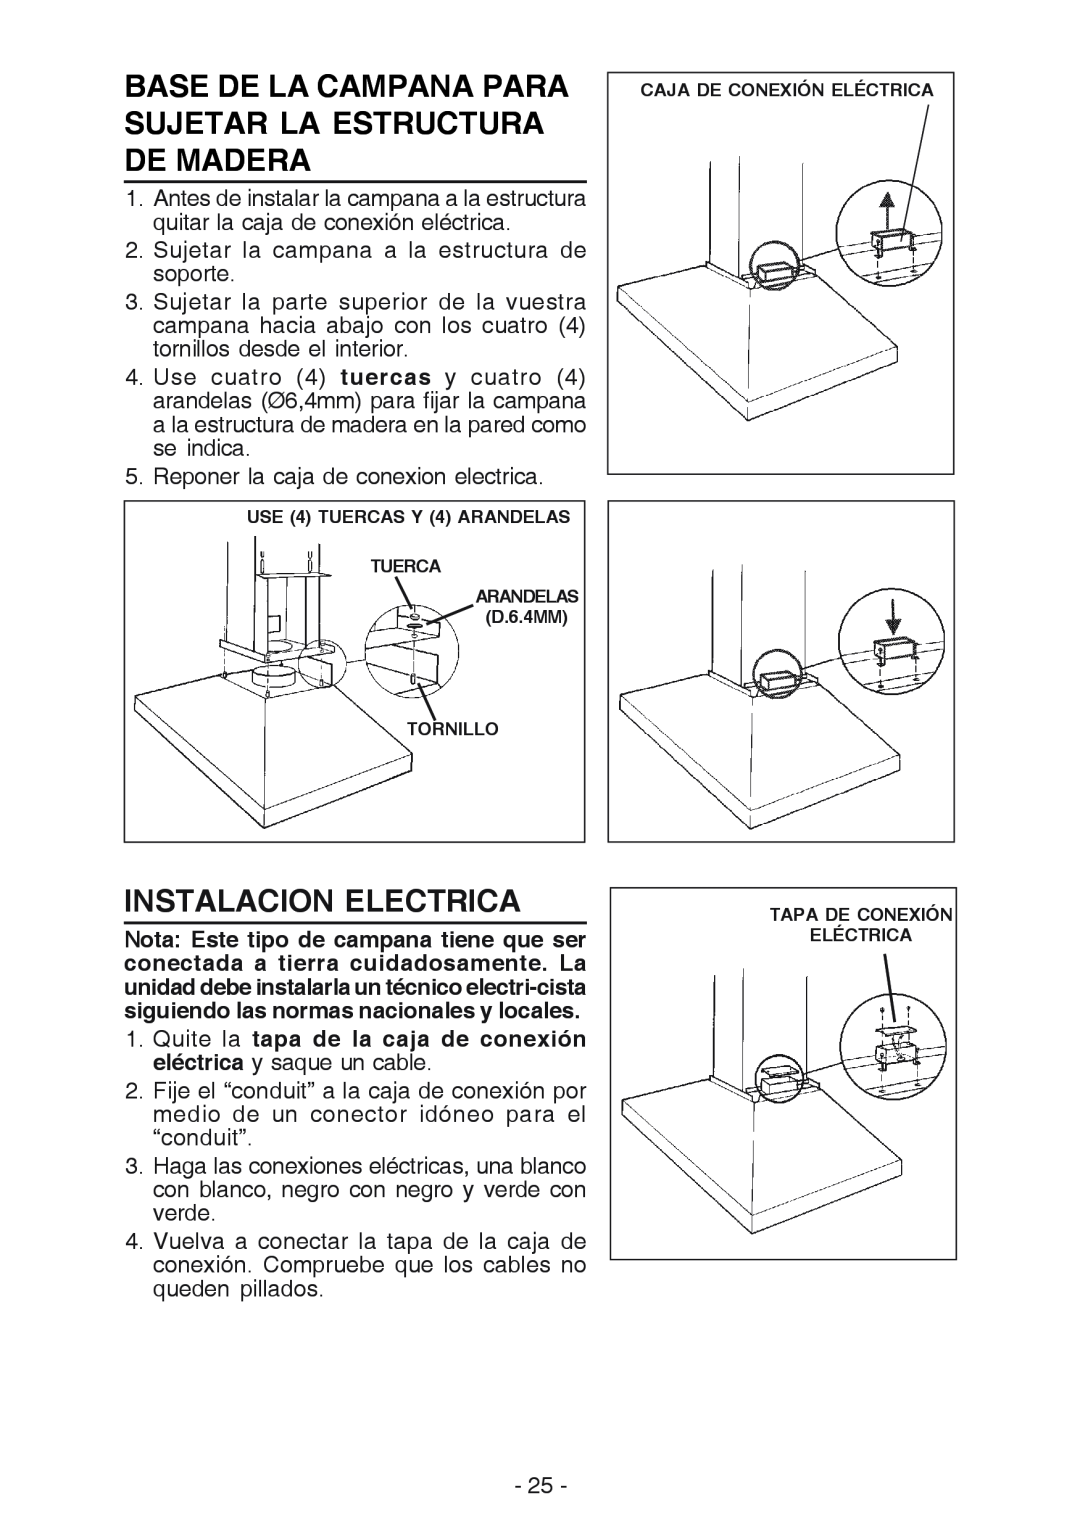 NuTone NP63000 manual Base De La Campana Para Sujetar La Estructura De Madera, Instalacion Electrica 